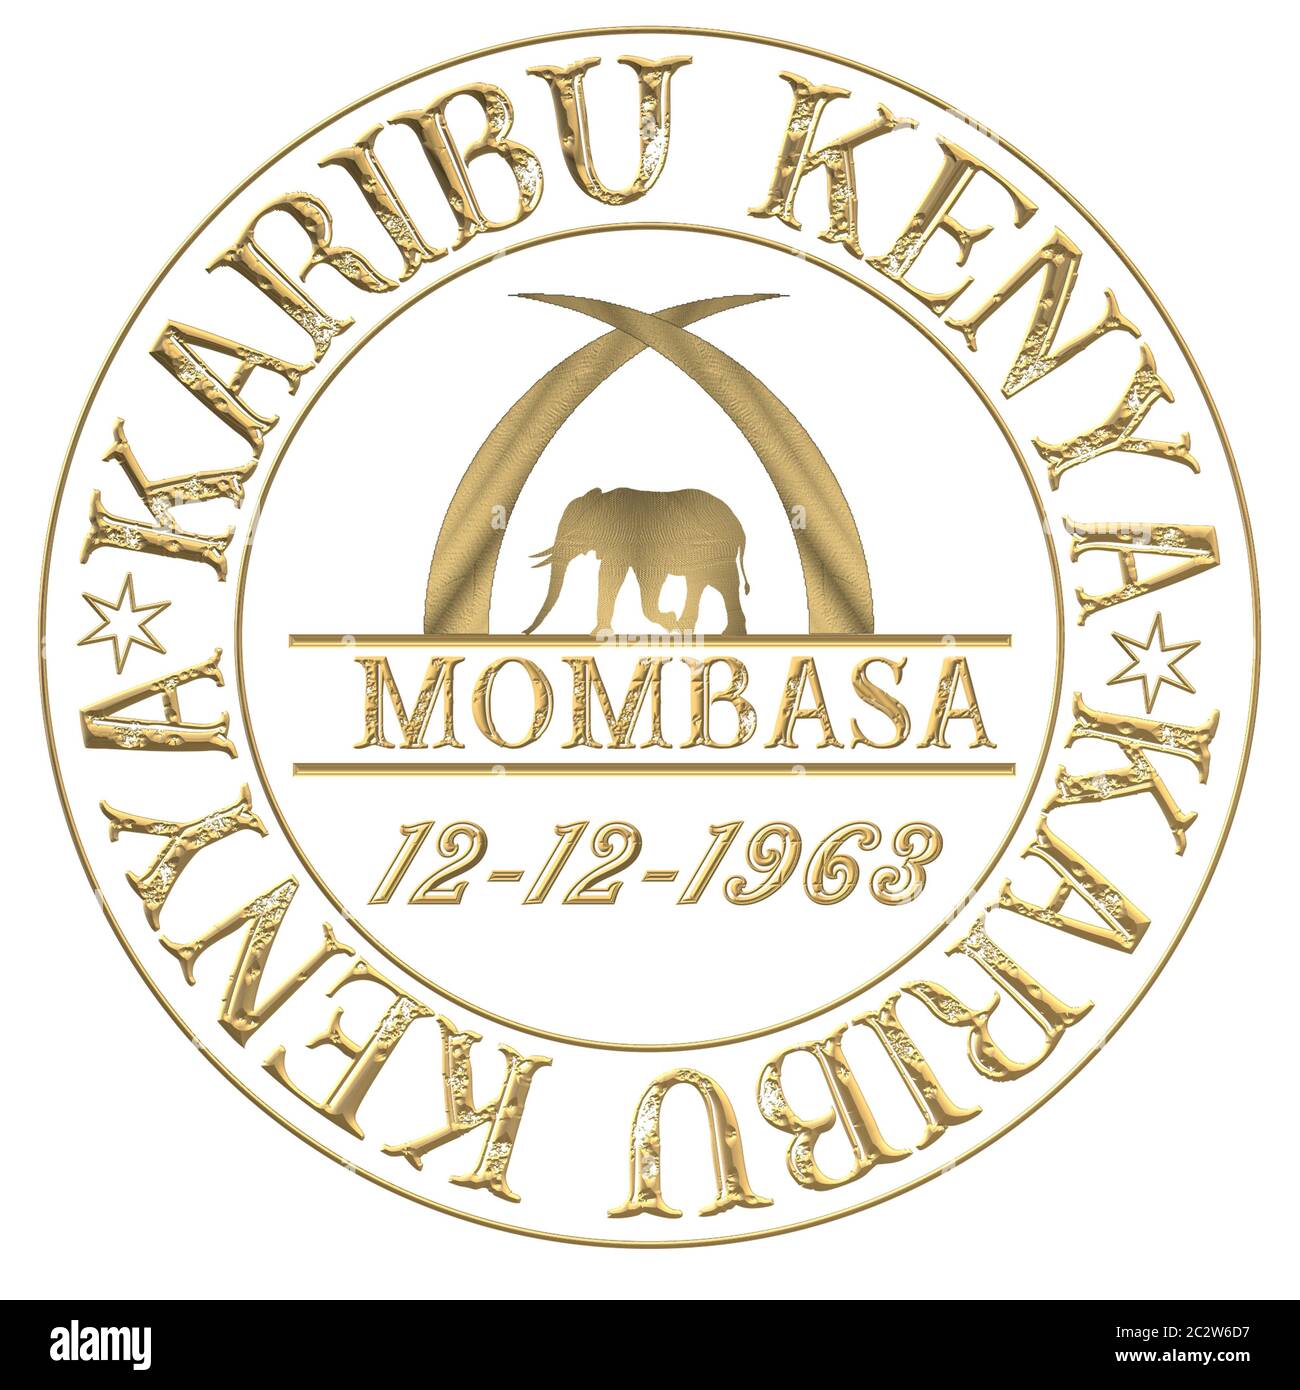 Briefmarke mit Aufschrift Hello Kenya Jambo Kenya und Karibu Kenya Stockfoto